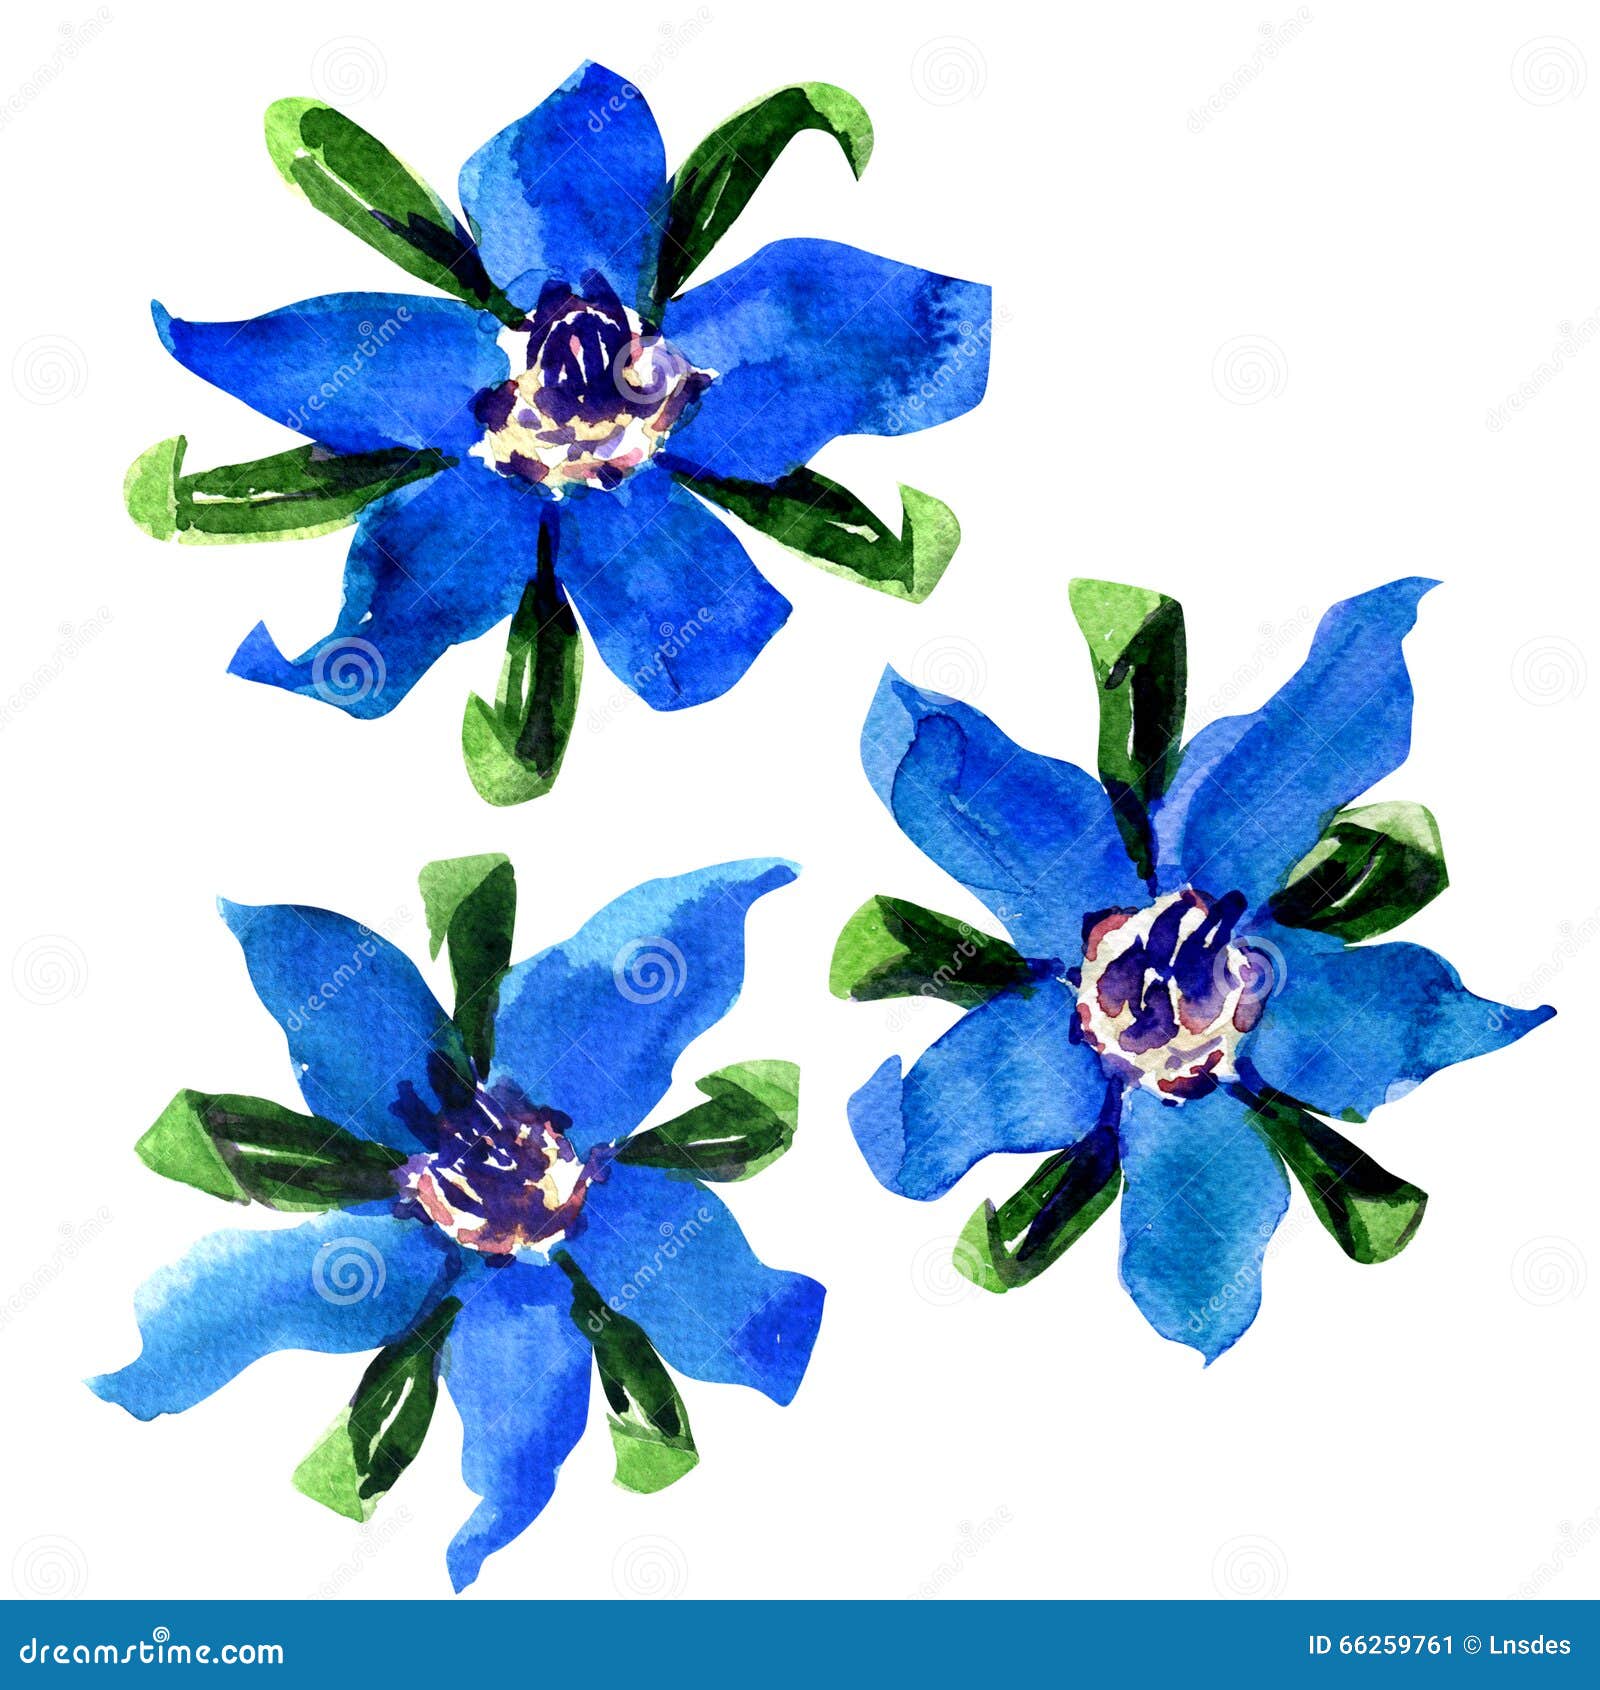 fresh blue borage flowers, starflower, on white background